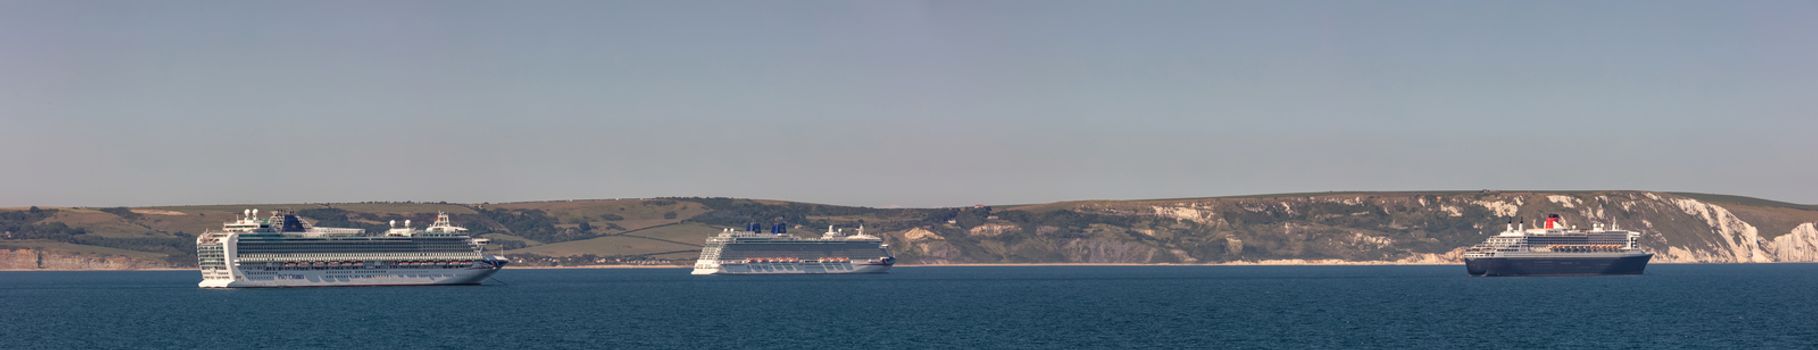 Weymouth Bay, United Kingdom - June 25, 2020: Beautiful panoramic shot of P&O cruise ships Azura and Britannia, Cunard cruise ship Queen Mary 2 anchored in Weymouth Bay.